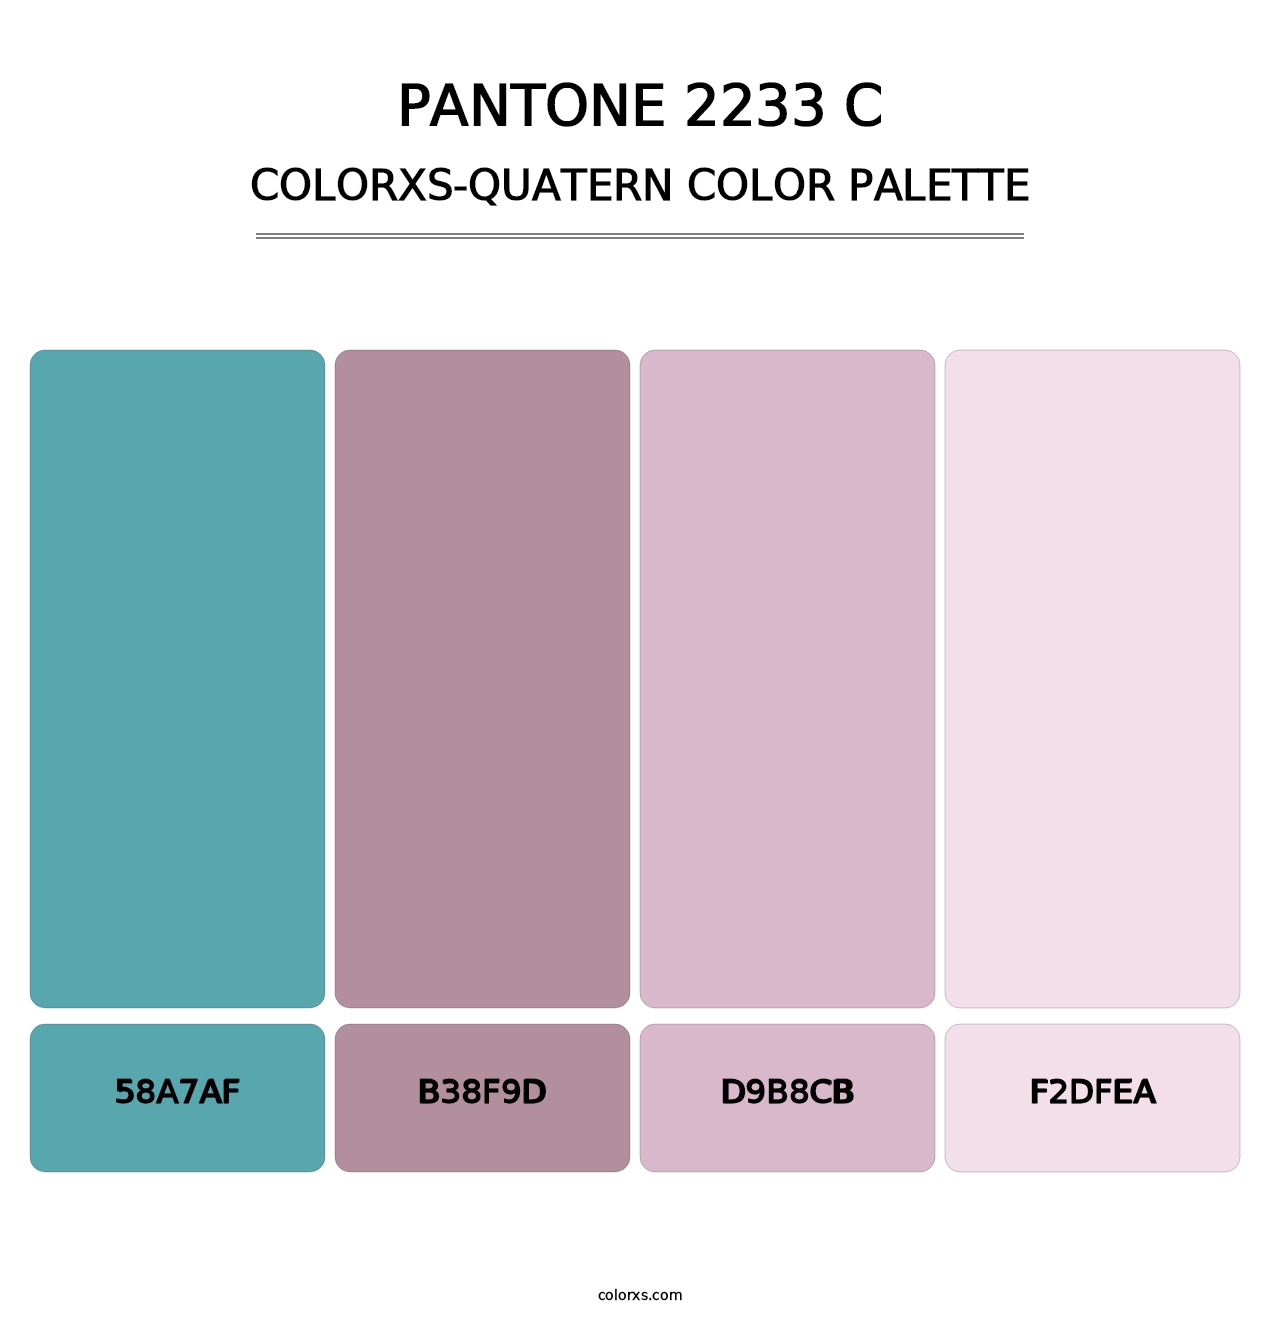 PANTONE 2233 C - Colorxs Quatern Palette